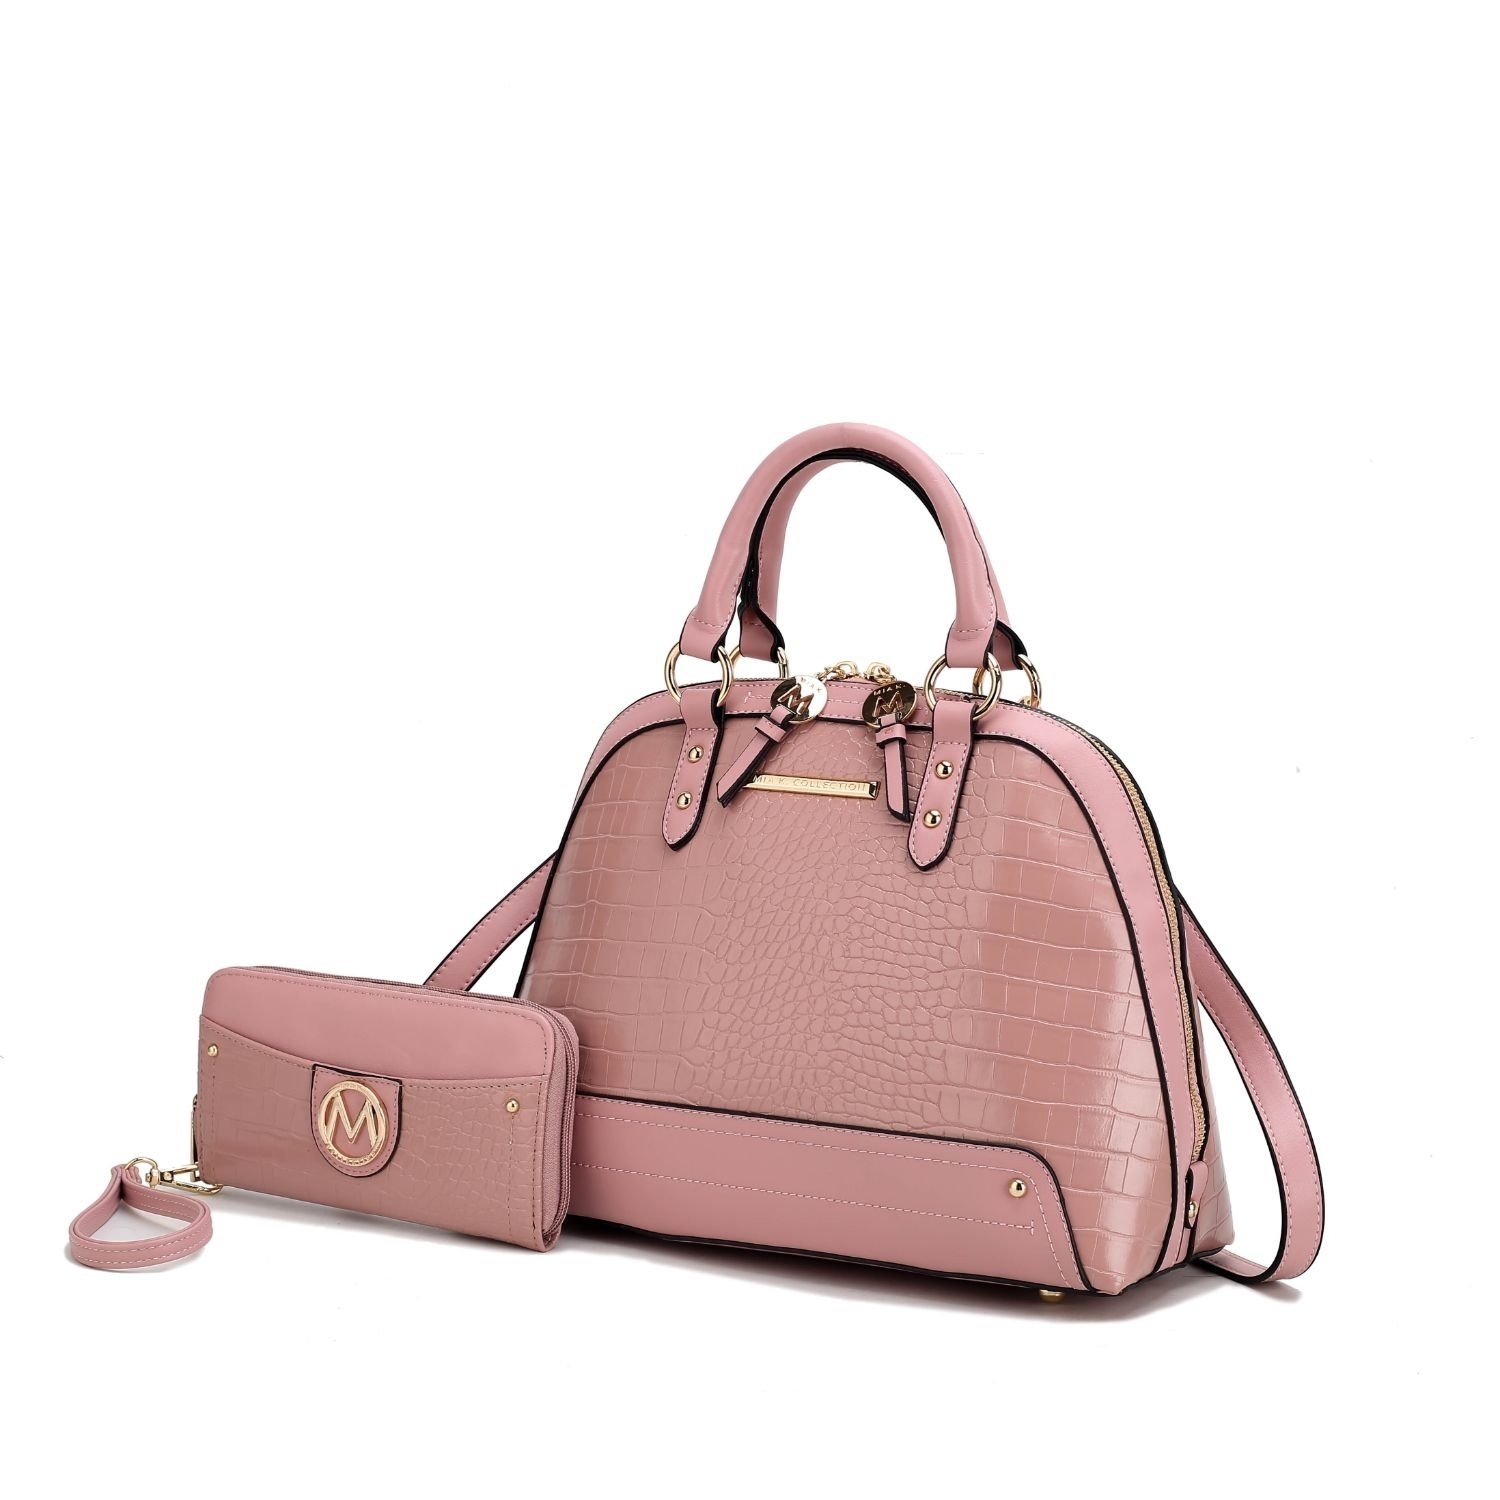 MKF Collection Nora Croco Satchel Handbag By Mia K. - Pink